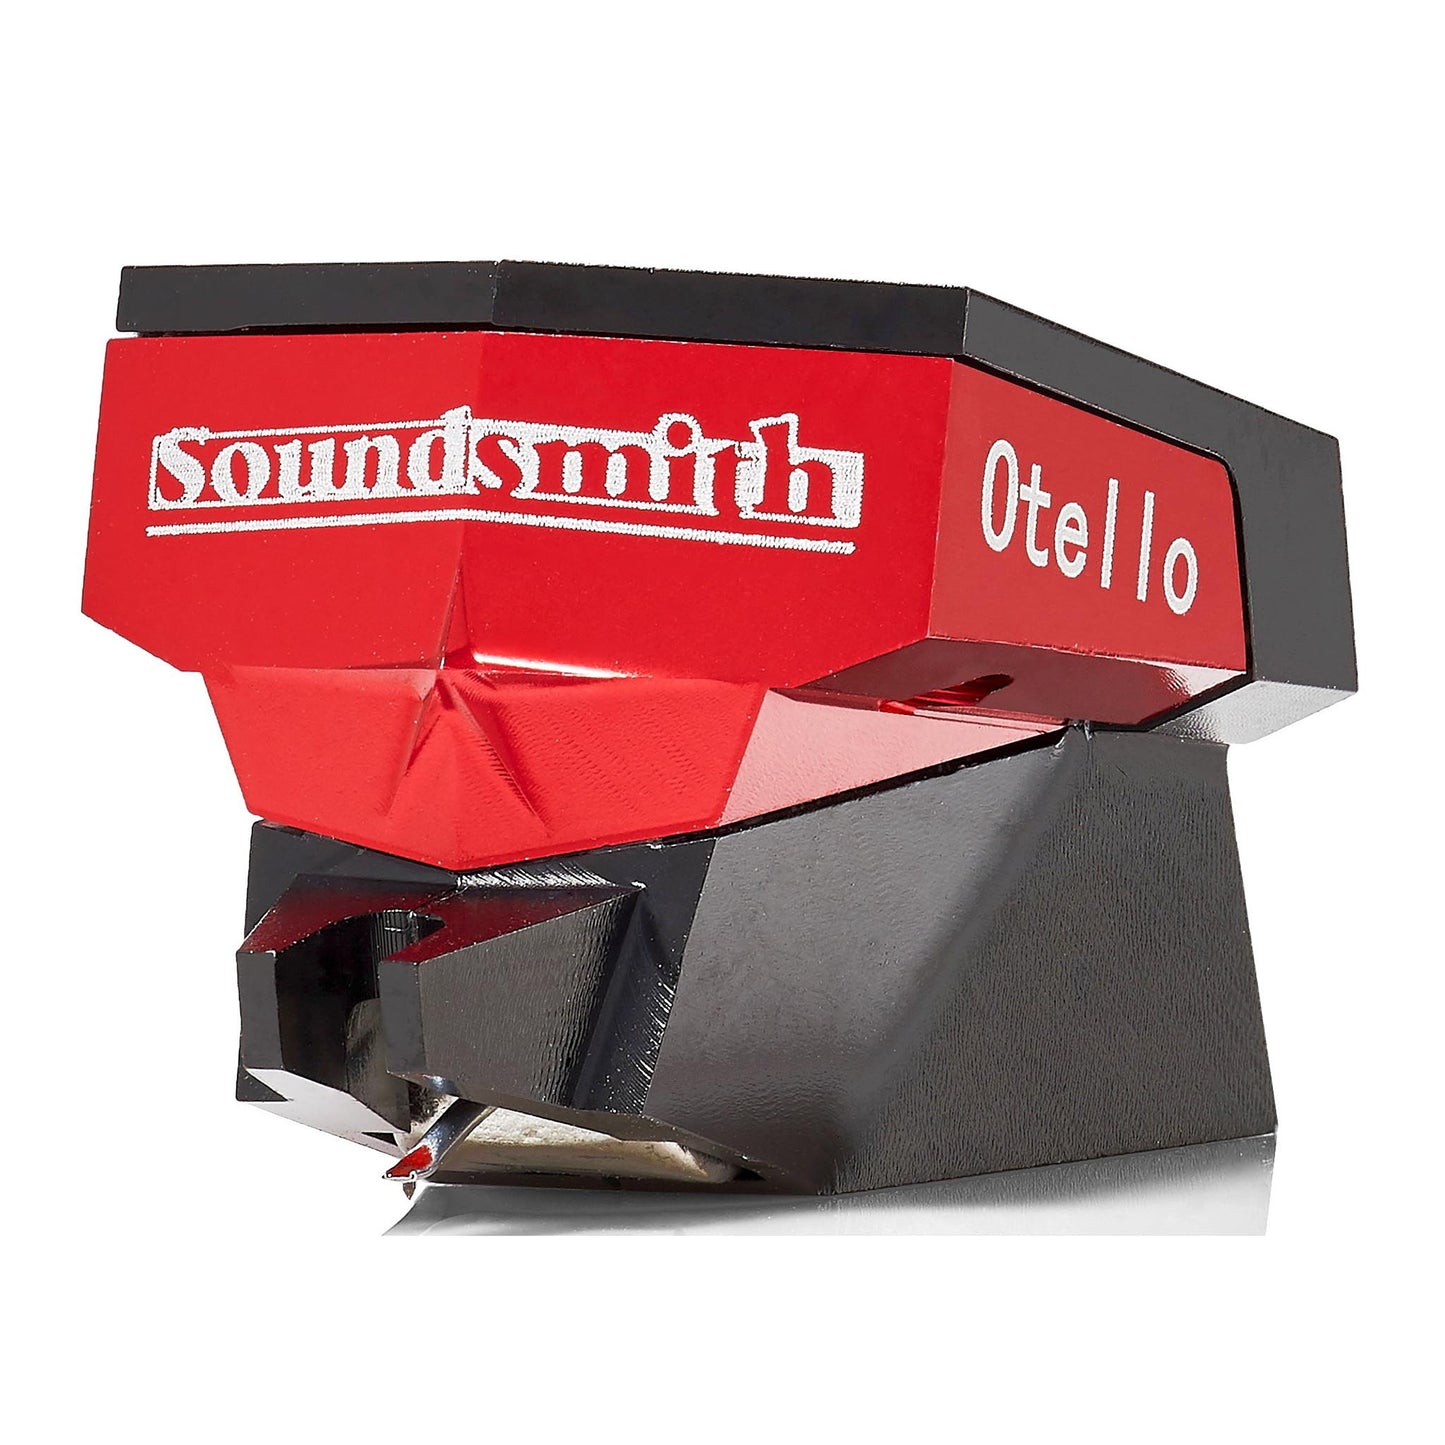 Soundsmith Otello ES Moving Iron Cartridge